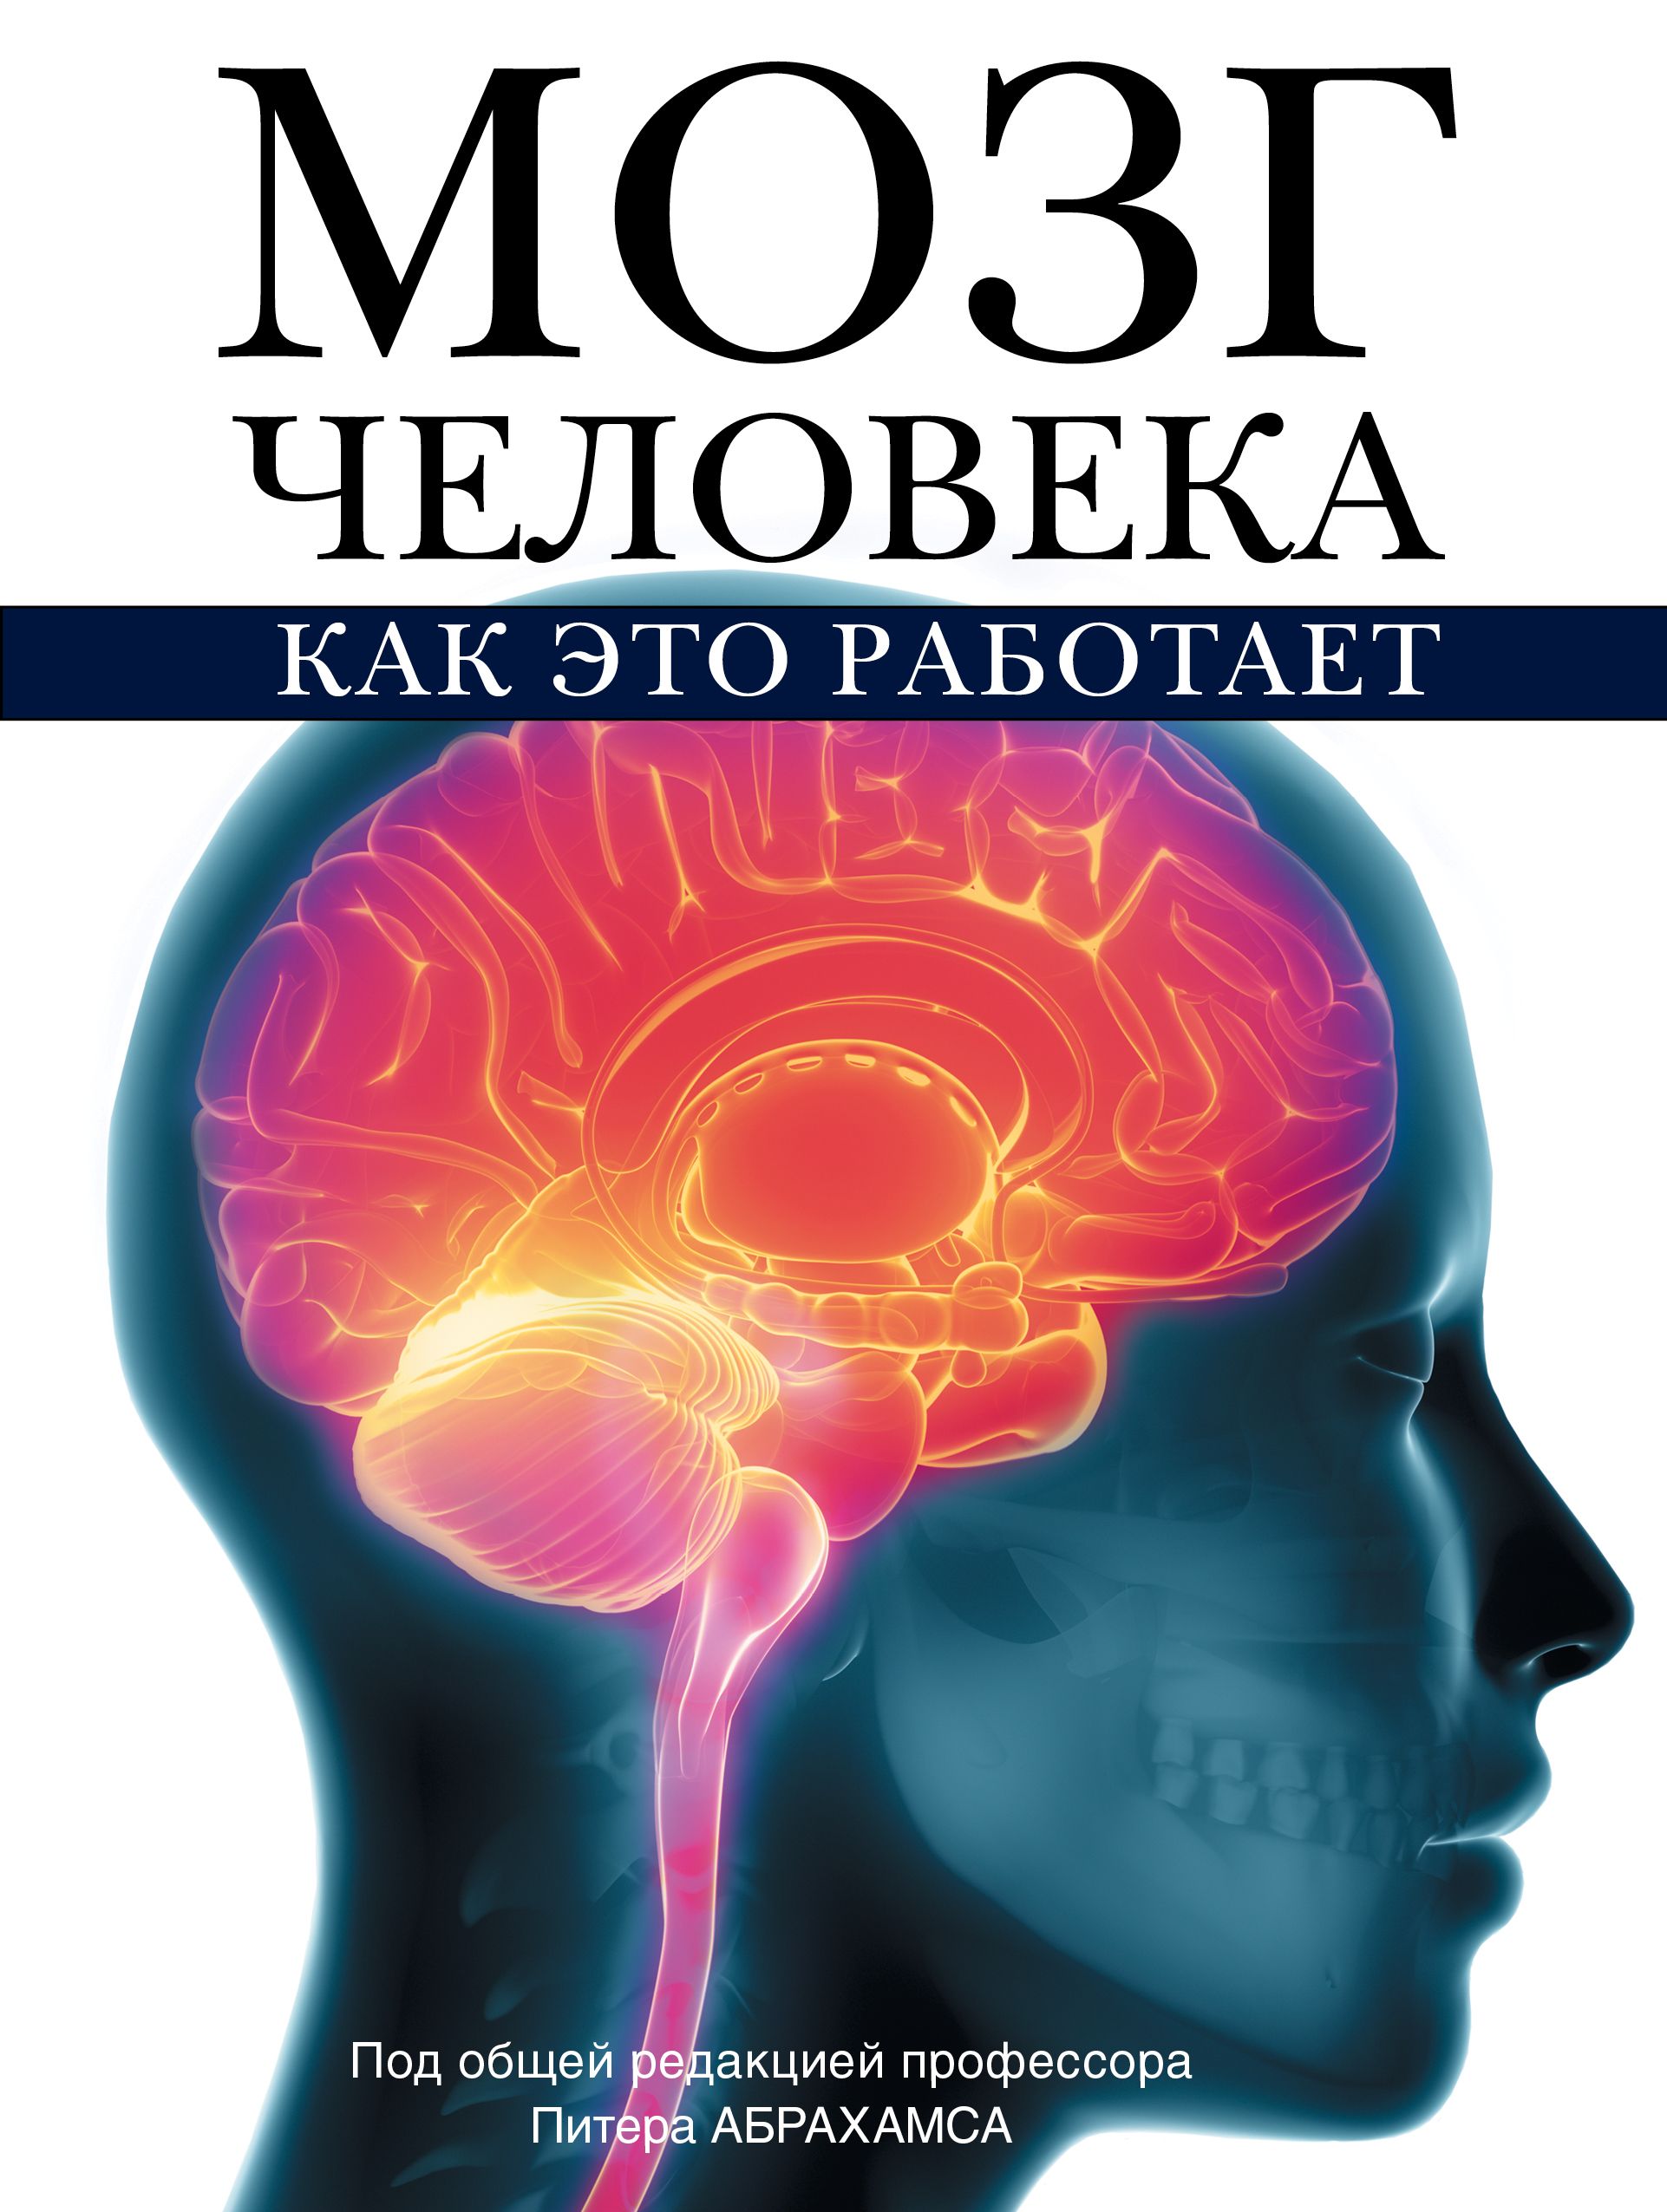 Как работает мозг книга. Книга мозг. Книга про мозг человека. Мозг с книжкой.